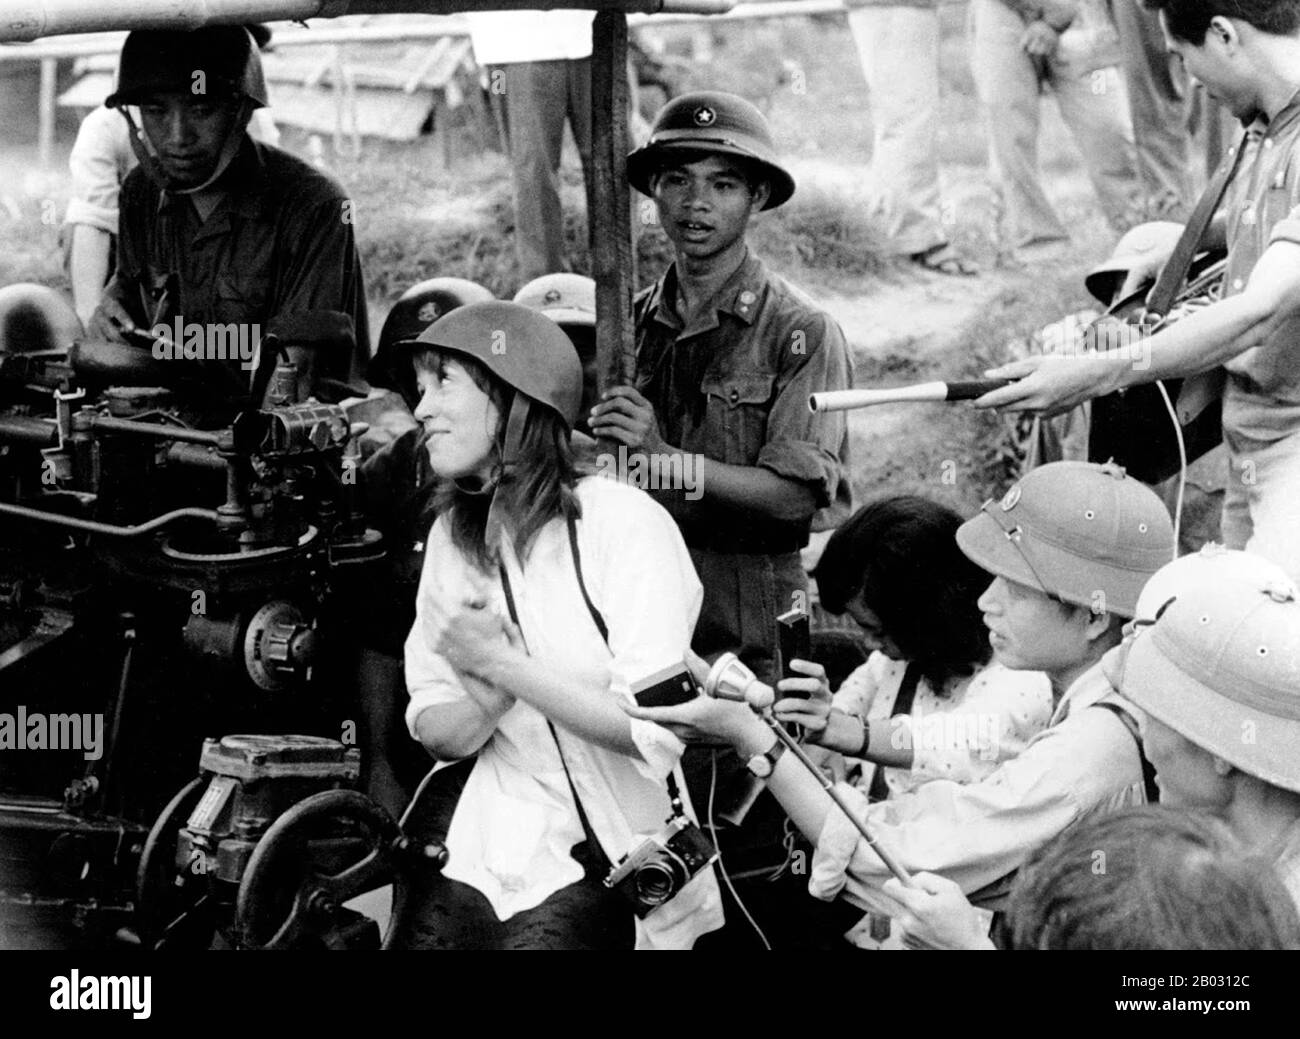 Jane Fonda besuchte Hanoi im Juli 1972. Neben anderen Aussagen wiederholte sie die nordvietnamesische Behauptung, die Vereinigten Staaten hätten das Deichsystem entlang des Roten Flusses bewusst ins Visier genommen. Tatsächlich erlitt das Deichsystem Bombenschäden, wurde aber nicht strategisch ins Visier genommen. In Nordvietnamesen wurde Fonda auf einer Flugabwehrbatterie sitzend fotografiert. In ihrer Autobiografie aus dem Jahr 2005 schreibt sie, dass sie manipuliert wurde, auf der Batterie zu sitzen, und war sofort entsetzt über die Auswirkungen der Bilder. Nach der Veröffentlichung der hinter der Flugabwehrpistole sitzenden Bilder von Fonda, stellte sie fest Stockfoto